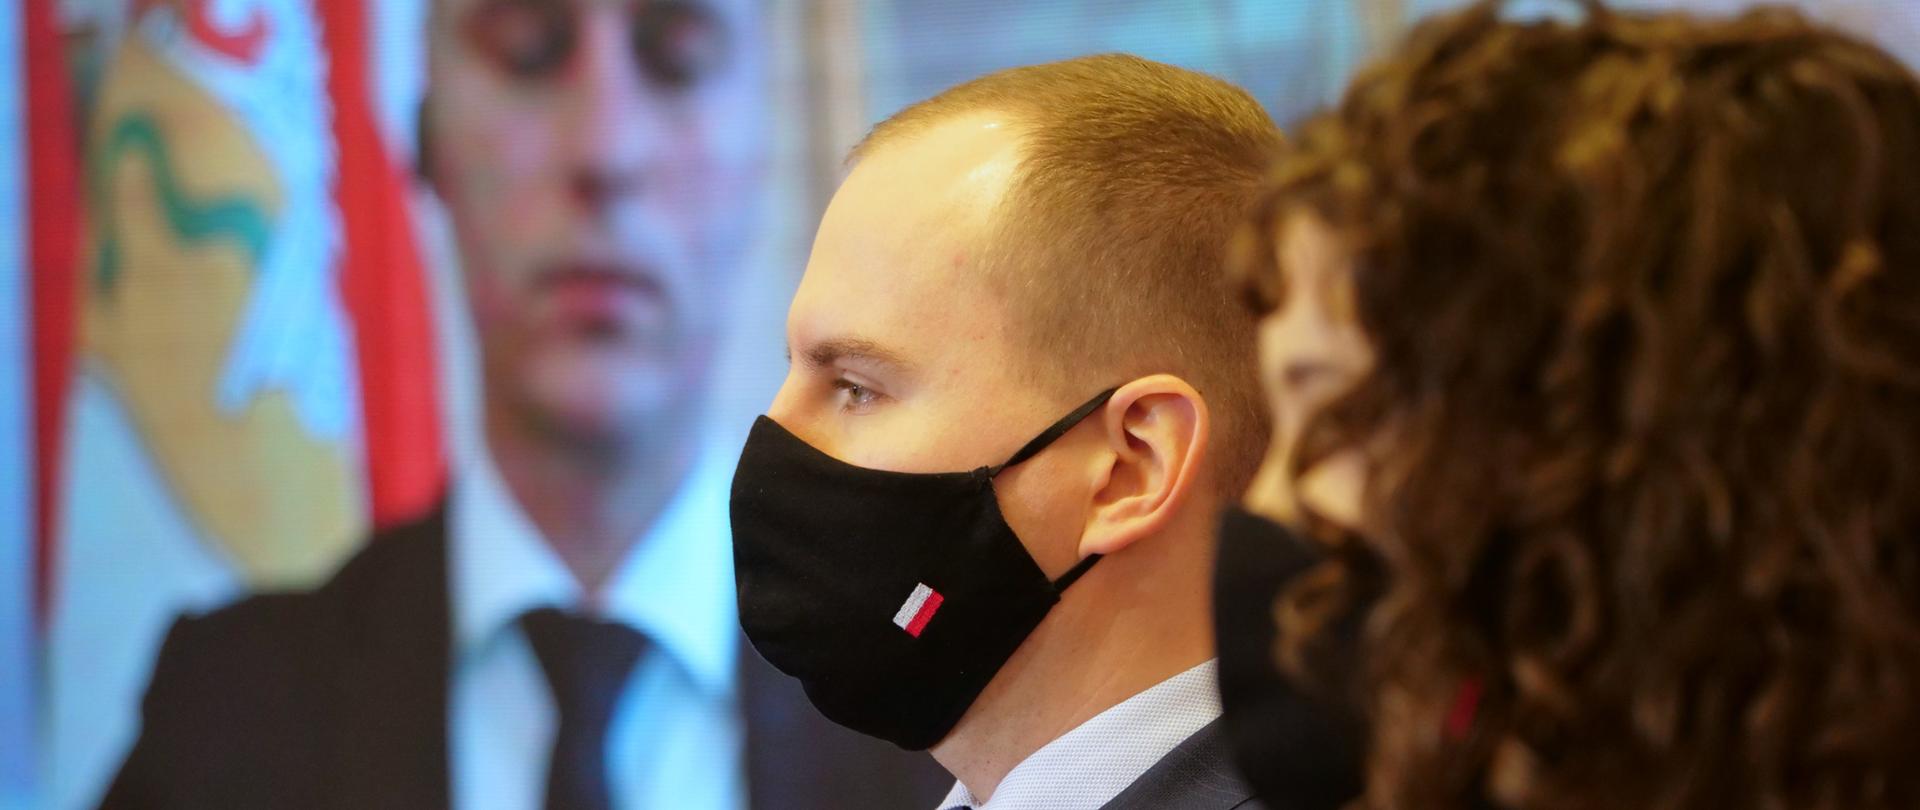 Zbliżenie - minister Adam Andruszkiewicz i Justyna Orłowska podczas konferencji prasowej. Zdjęcie z profilu - oboje w maseczkach.